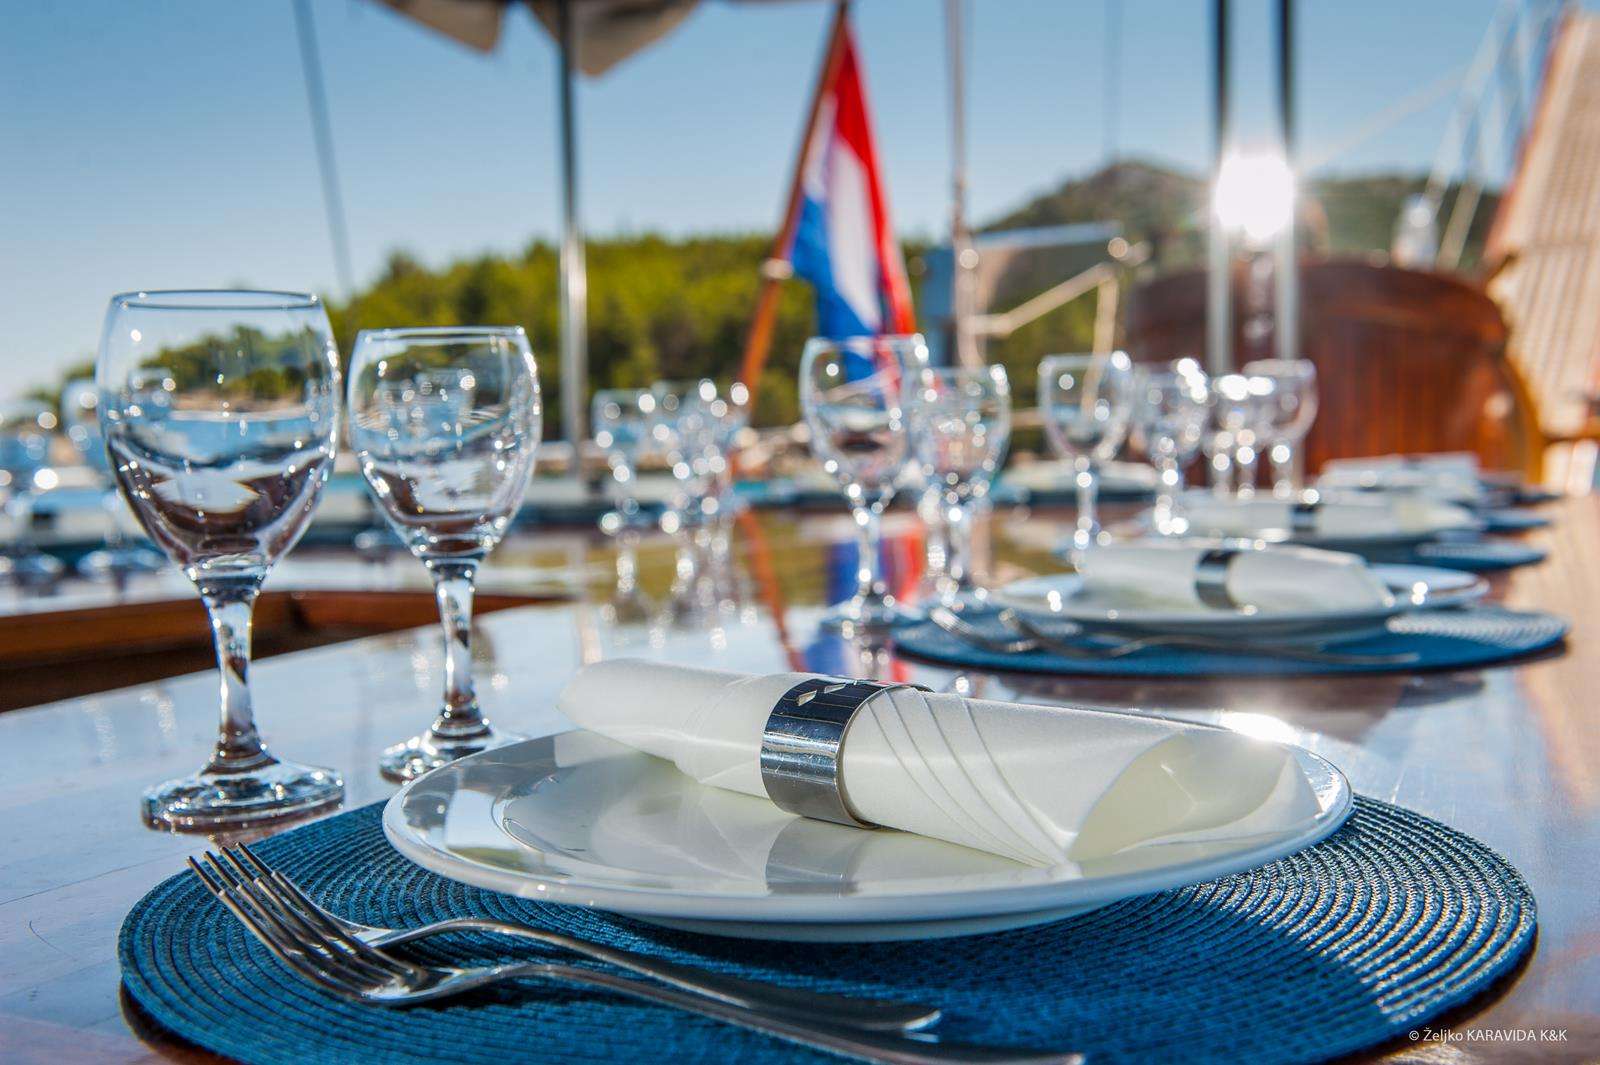 Fortuna - Yacht Charter Rijeka & Boat hire in Croatia 5